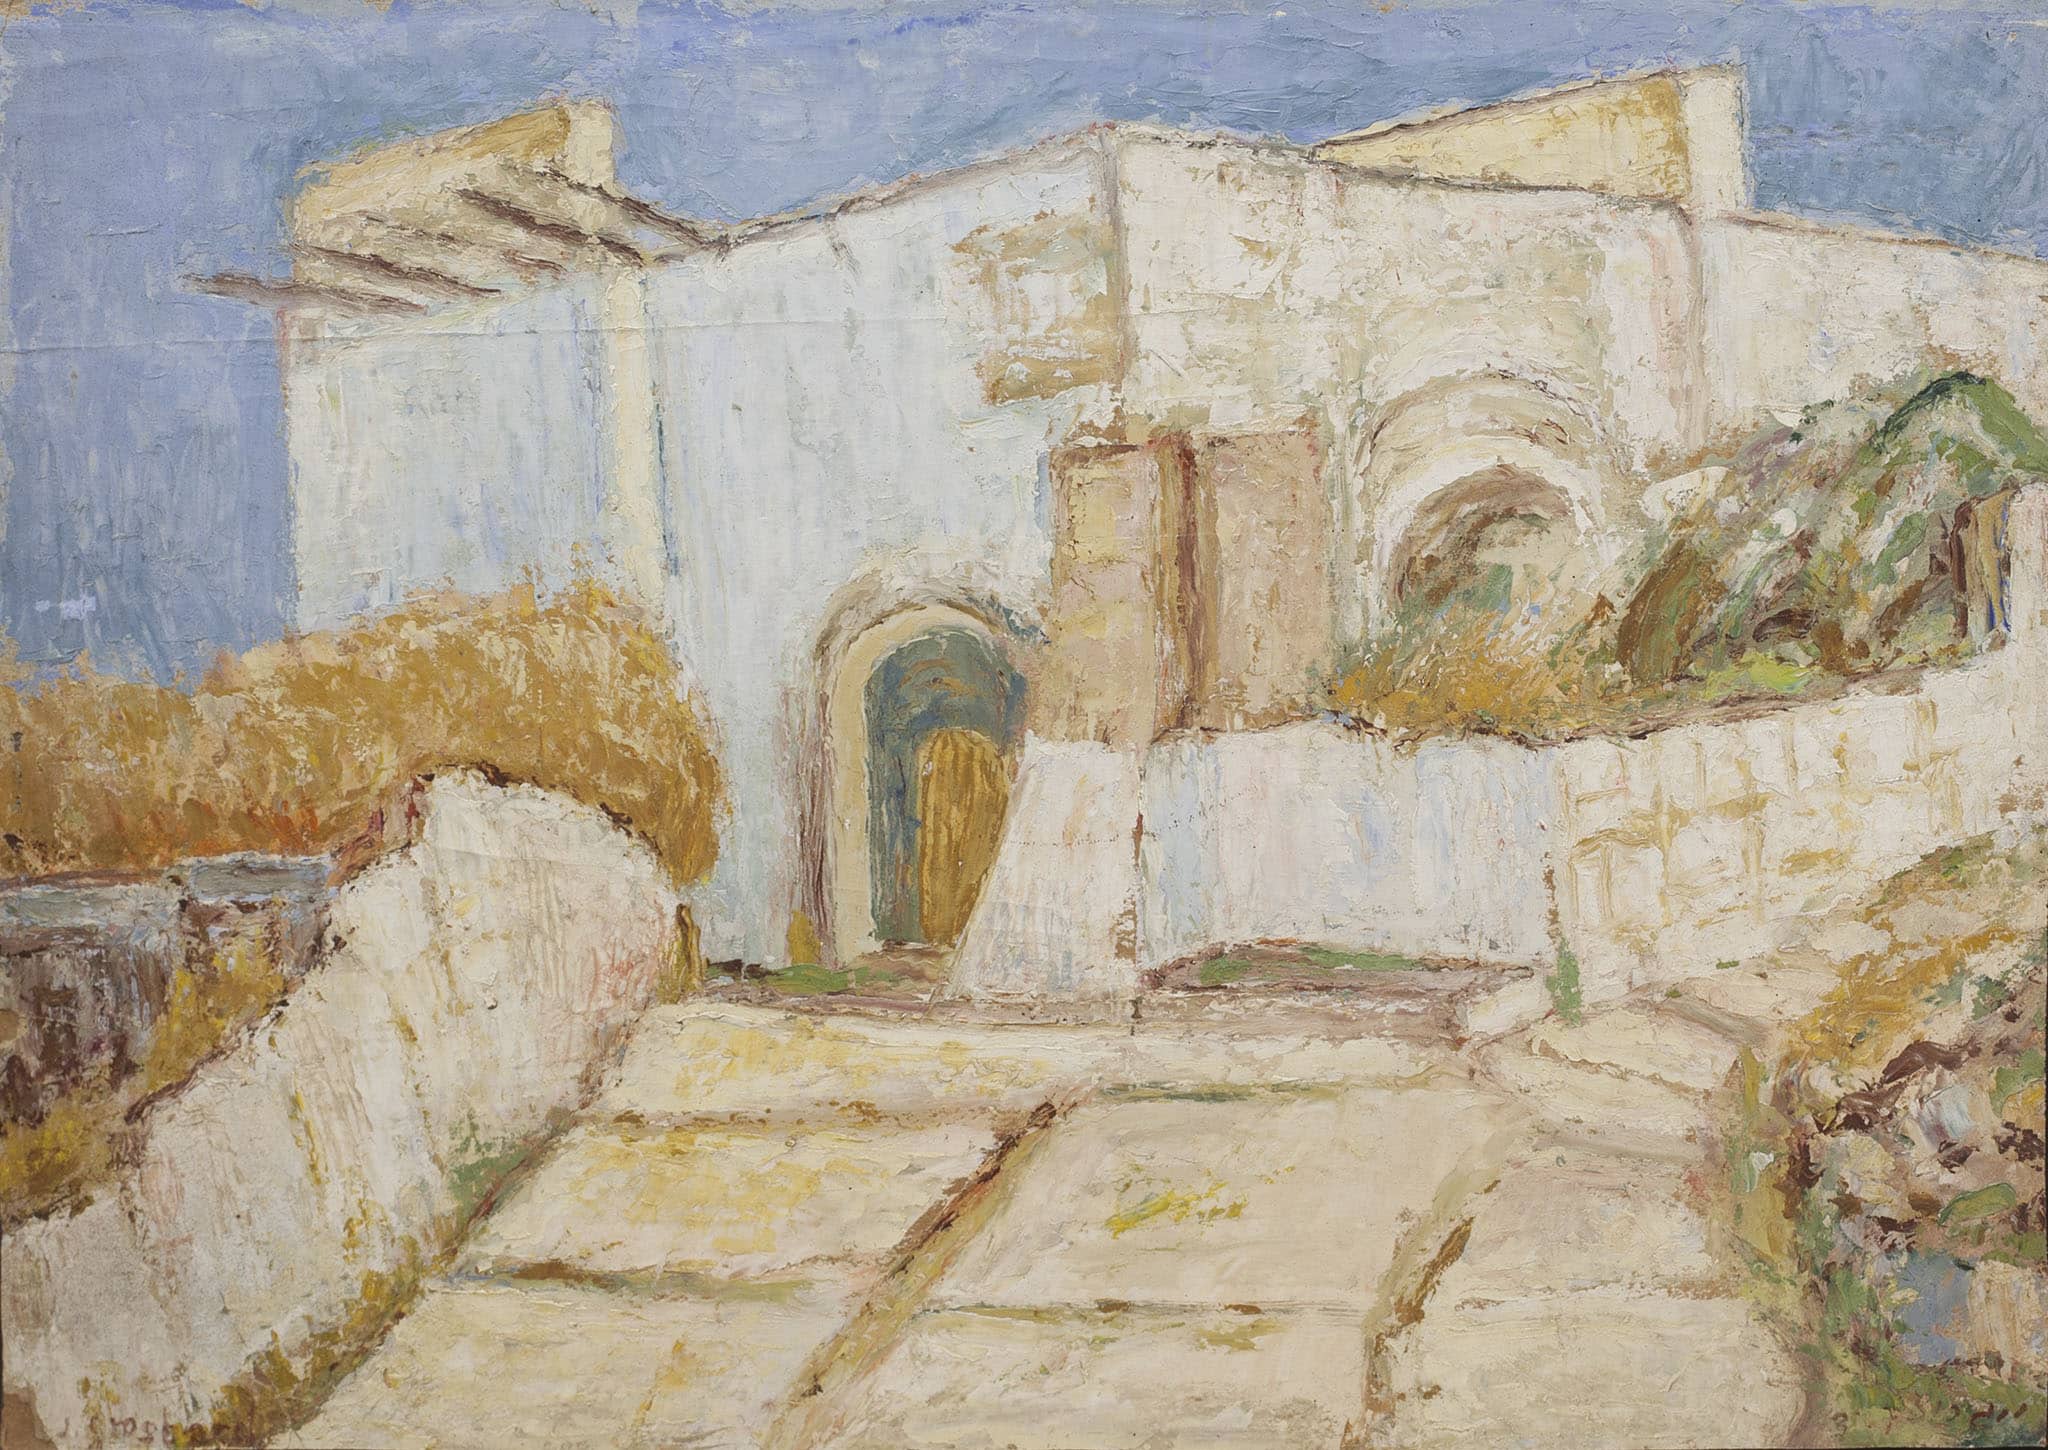 יהושוע גרוסברד, "בית בצפת", 1948, שמן על קרטון, 48x34 ס"מ